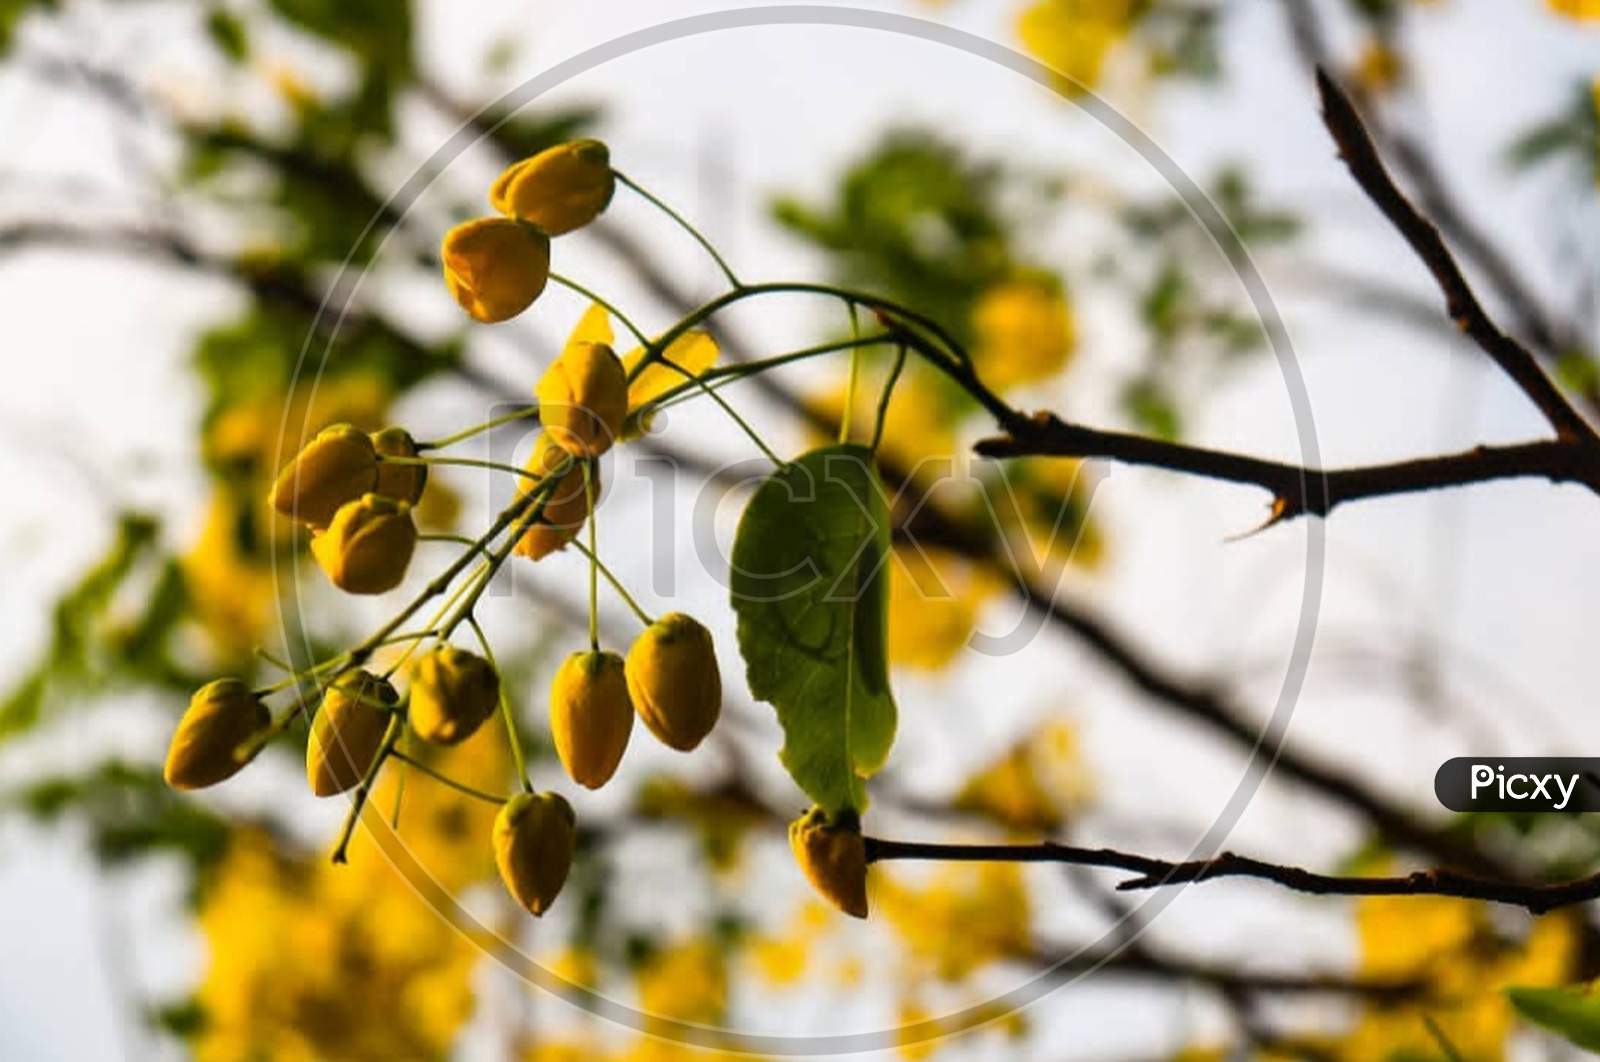 Yellow×Remove  Plant×Remove  Branch×Remove  Tree×Remove  Nature×Remove  Spring×Remove  Twig×Remove  Woody plant×Remove  Leaf×Remove  Autumn×Remove